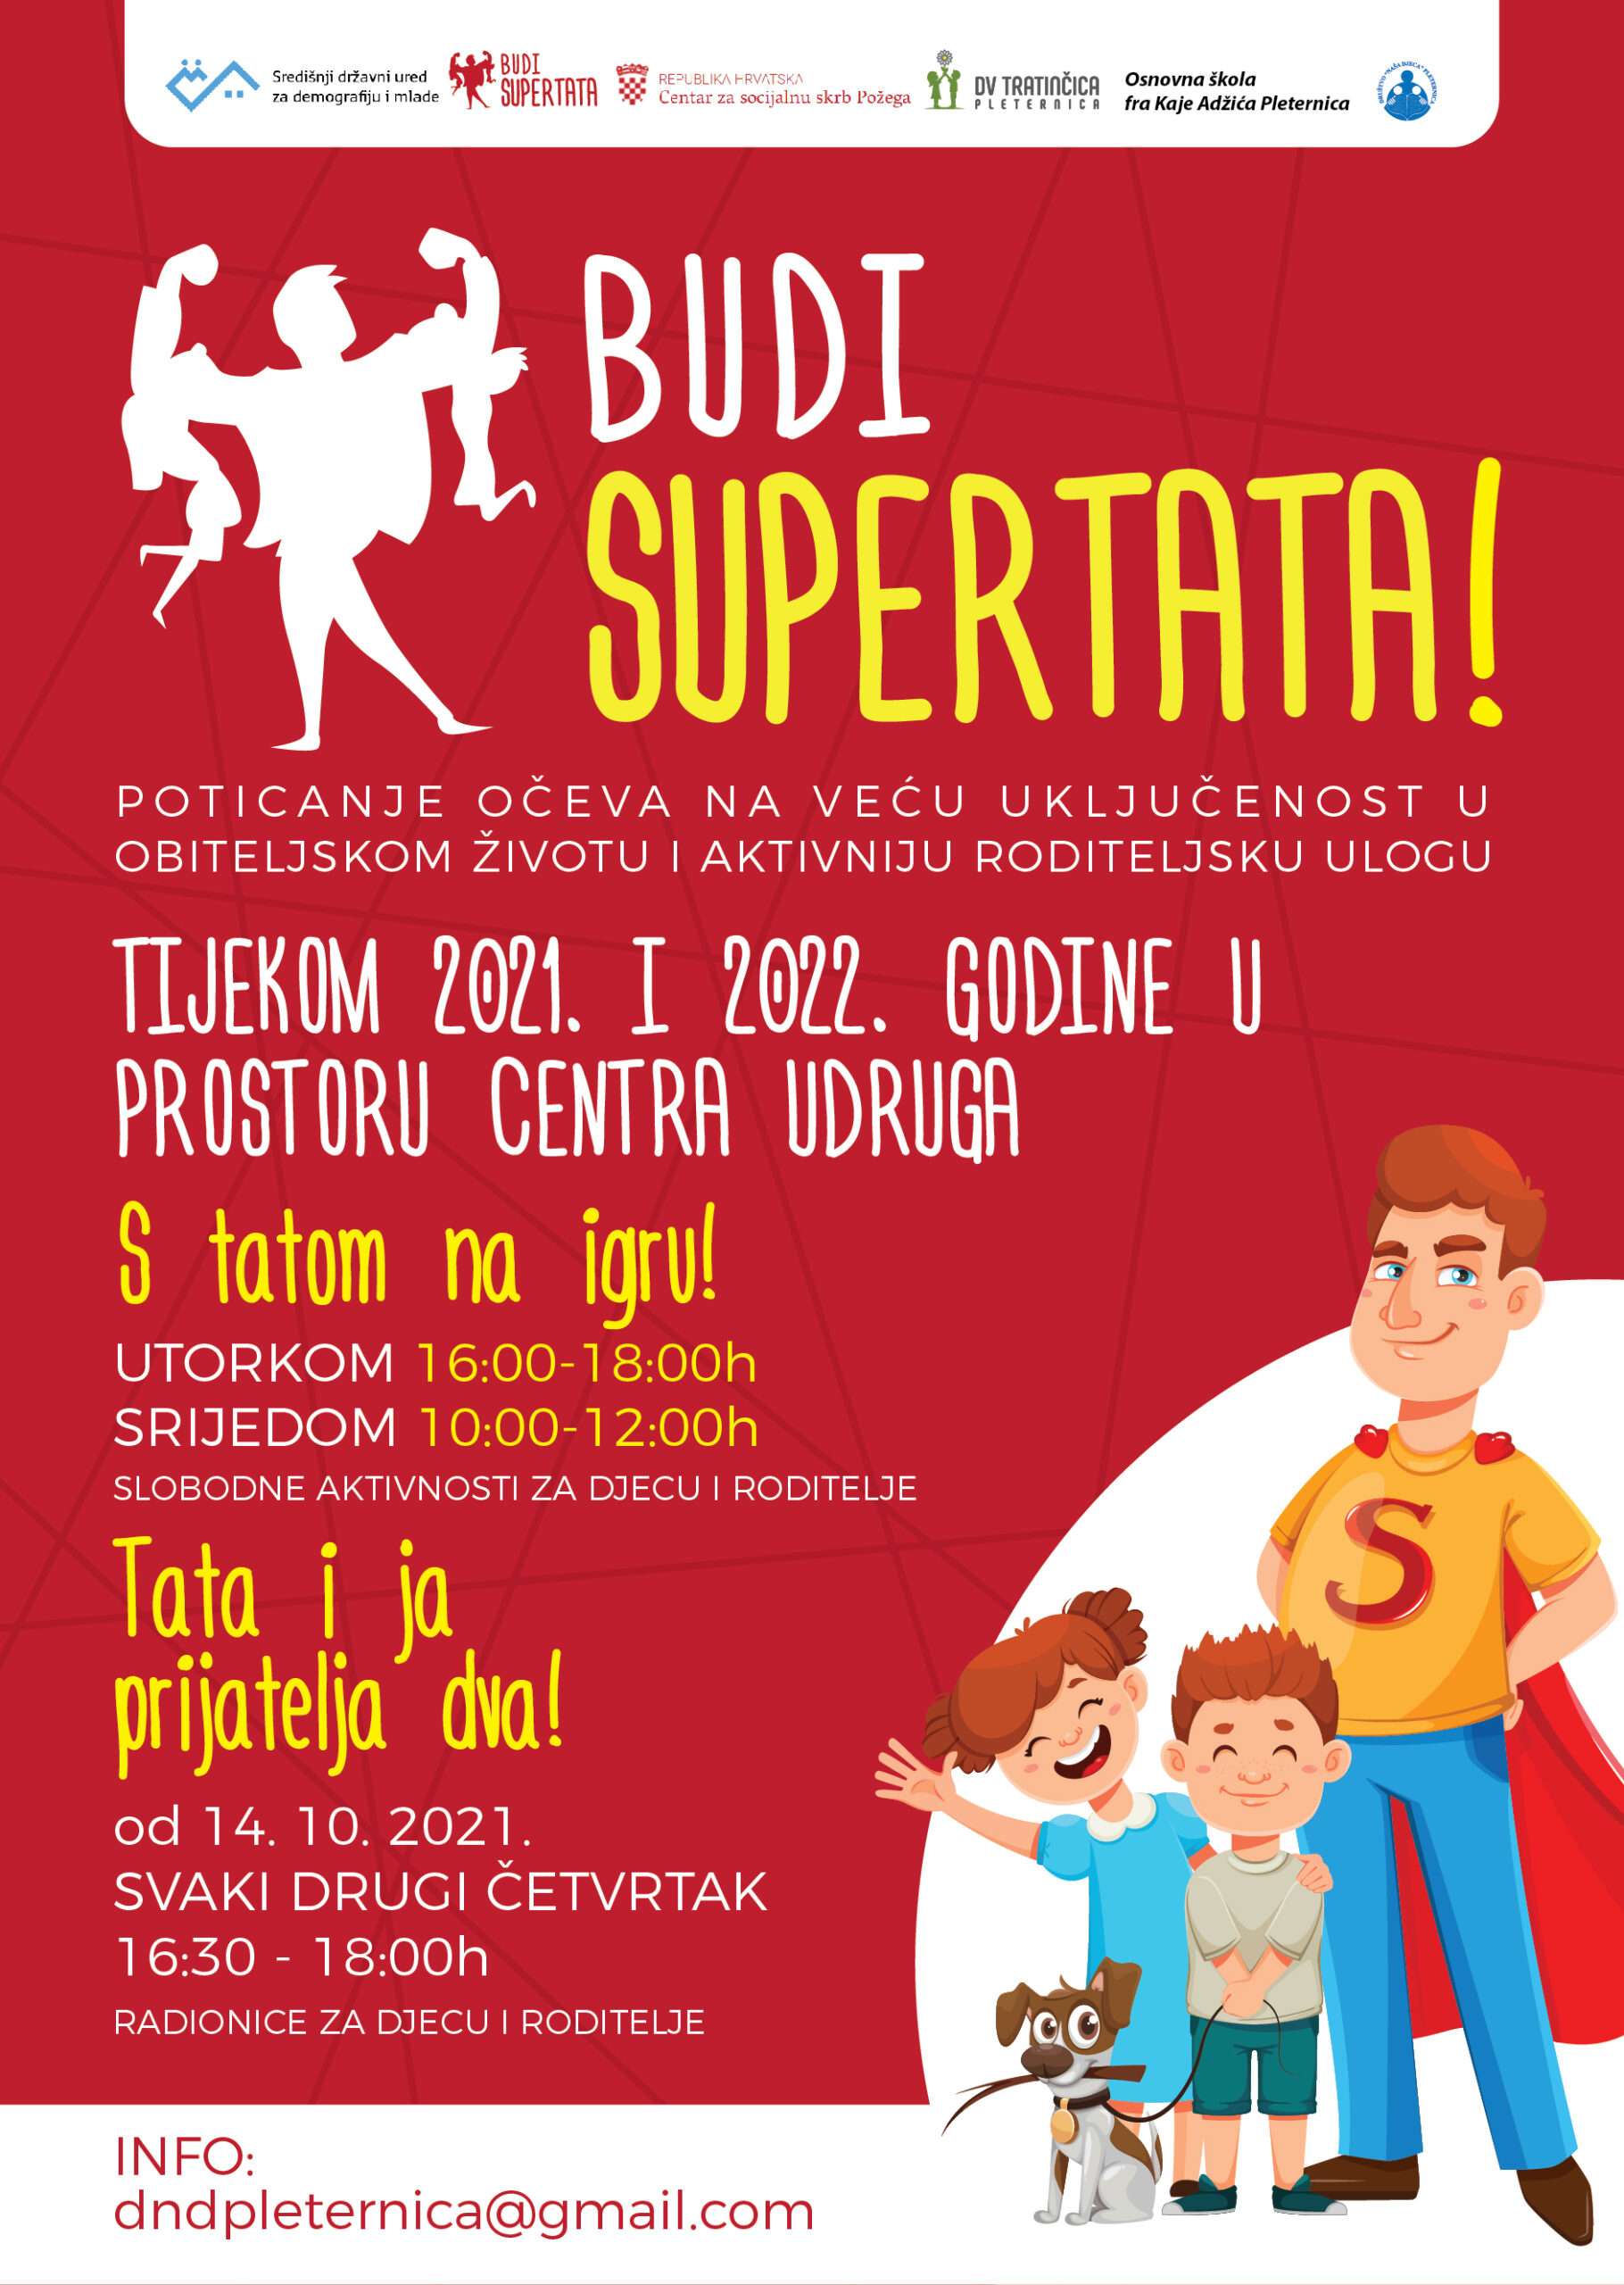 Projekt Budi SUPERTATA!: “Primarni je cilj osvijestiti javnost o važnosti ravnopravnog sudjelovanja oba roditelja u obiteljskom životu”